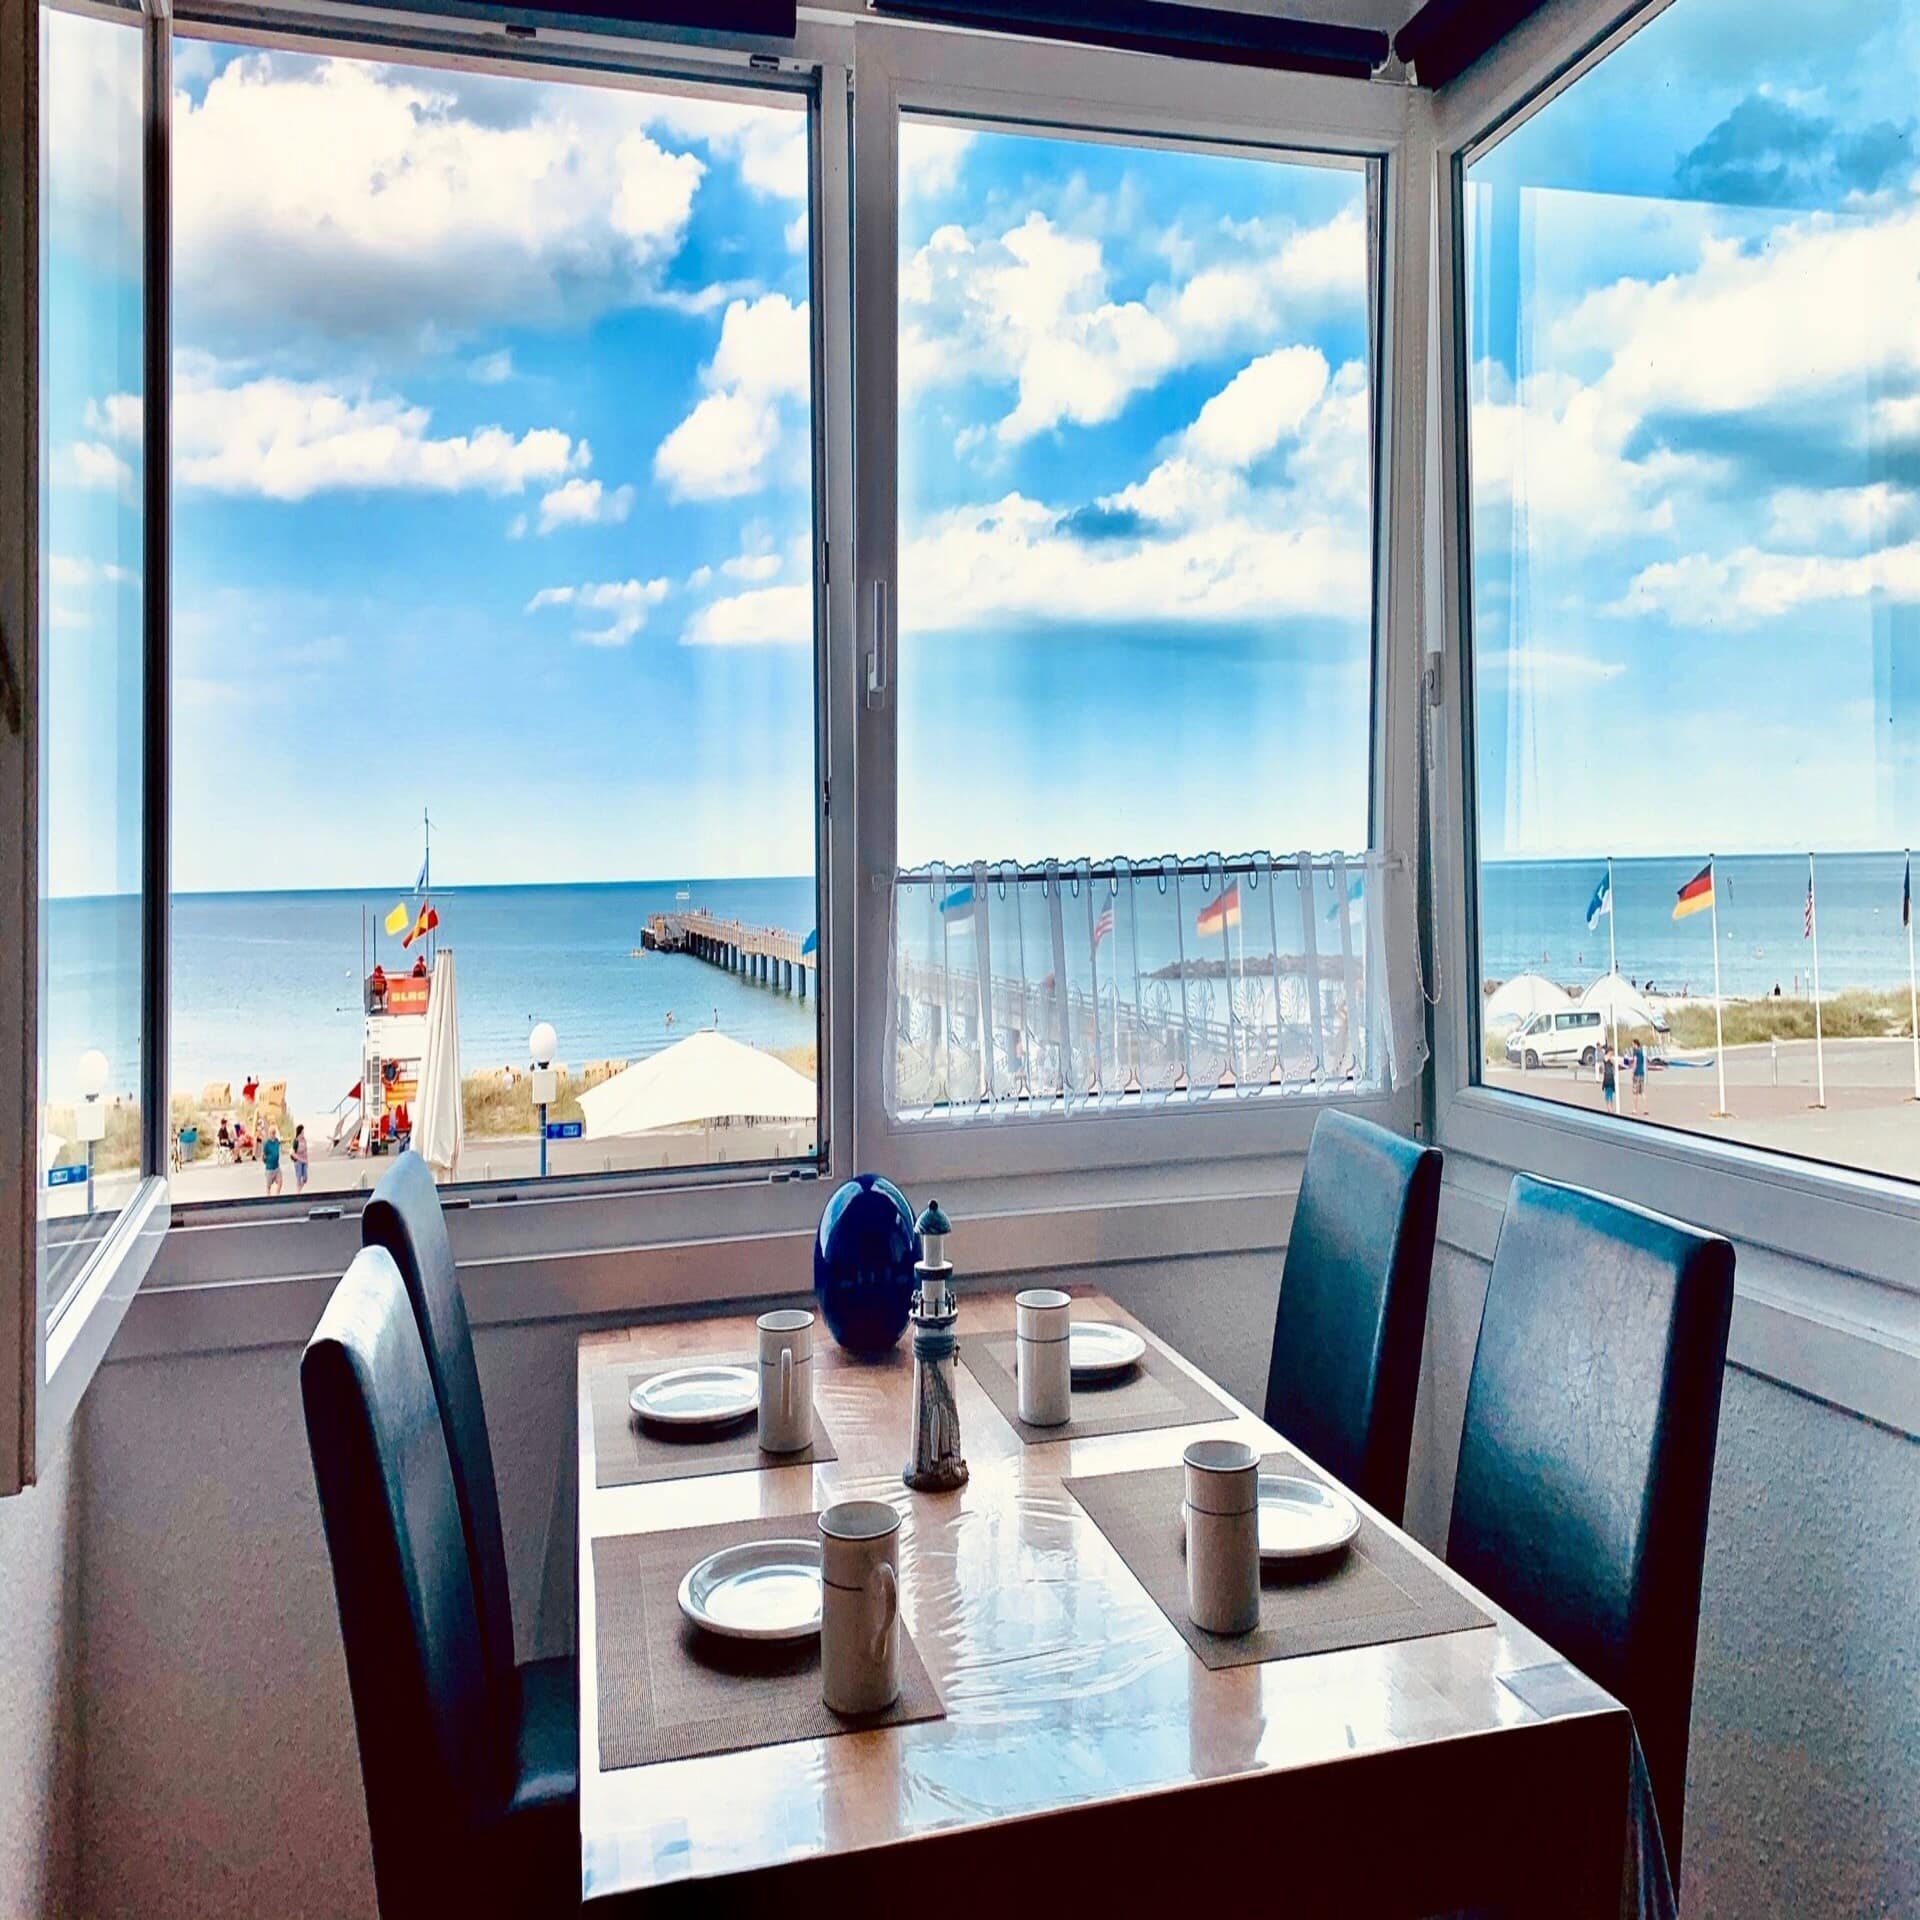 Tisch für 4 Personen am geöffneten Fenster mit Blick auf die Promenade, eine Seebrücke und das Meer.